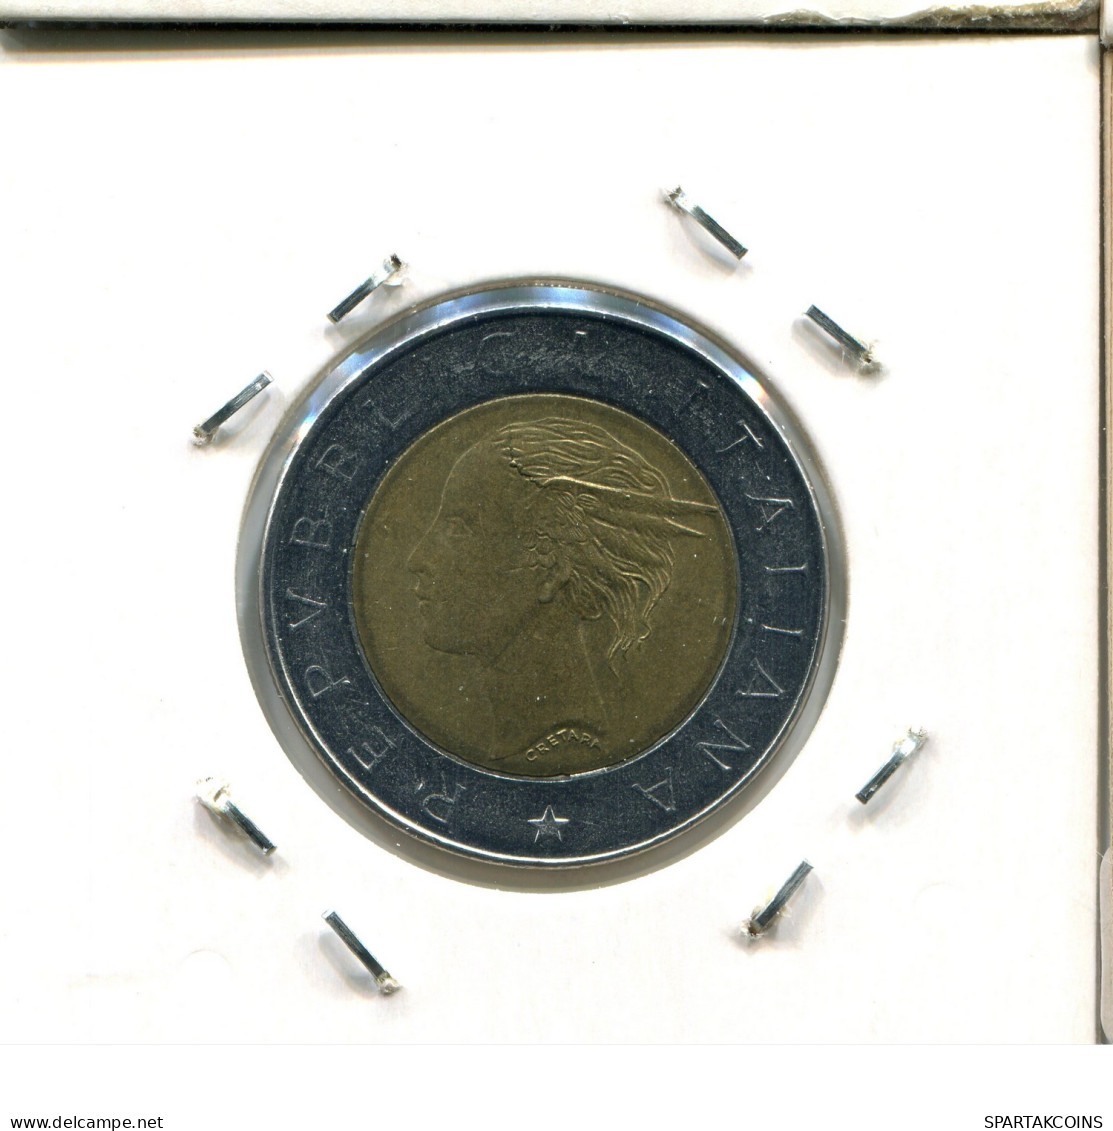 500 LIRE 1993 ITALIA ITALY Moneda BIMETALLIC #AY151.2.E.A - 500 Lire